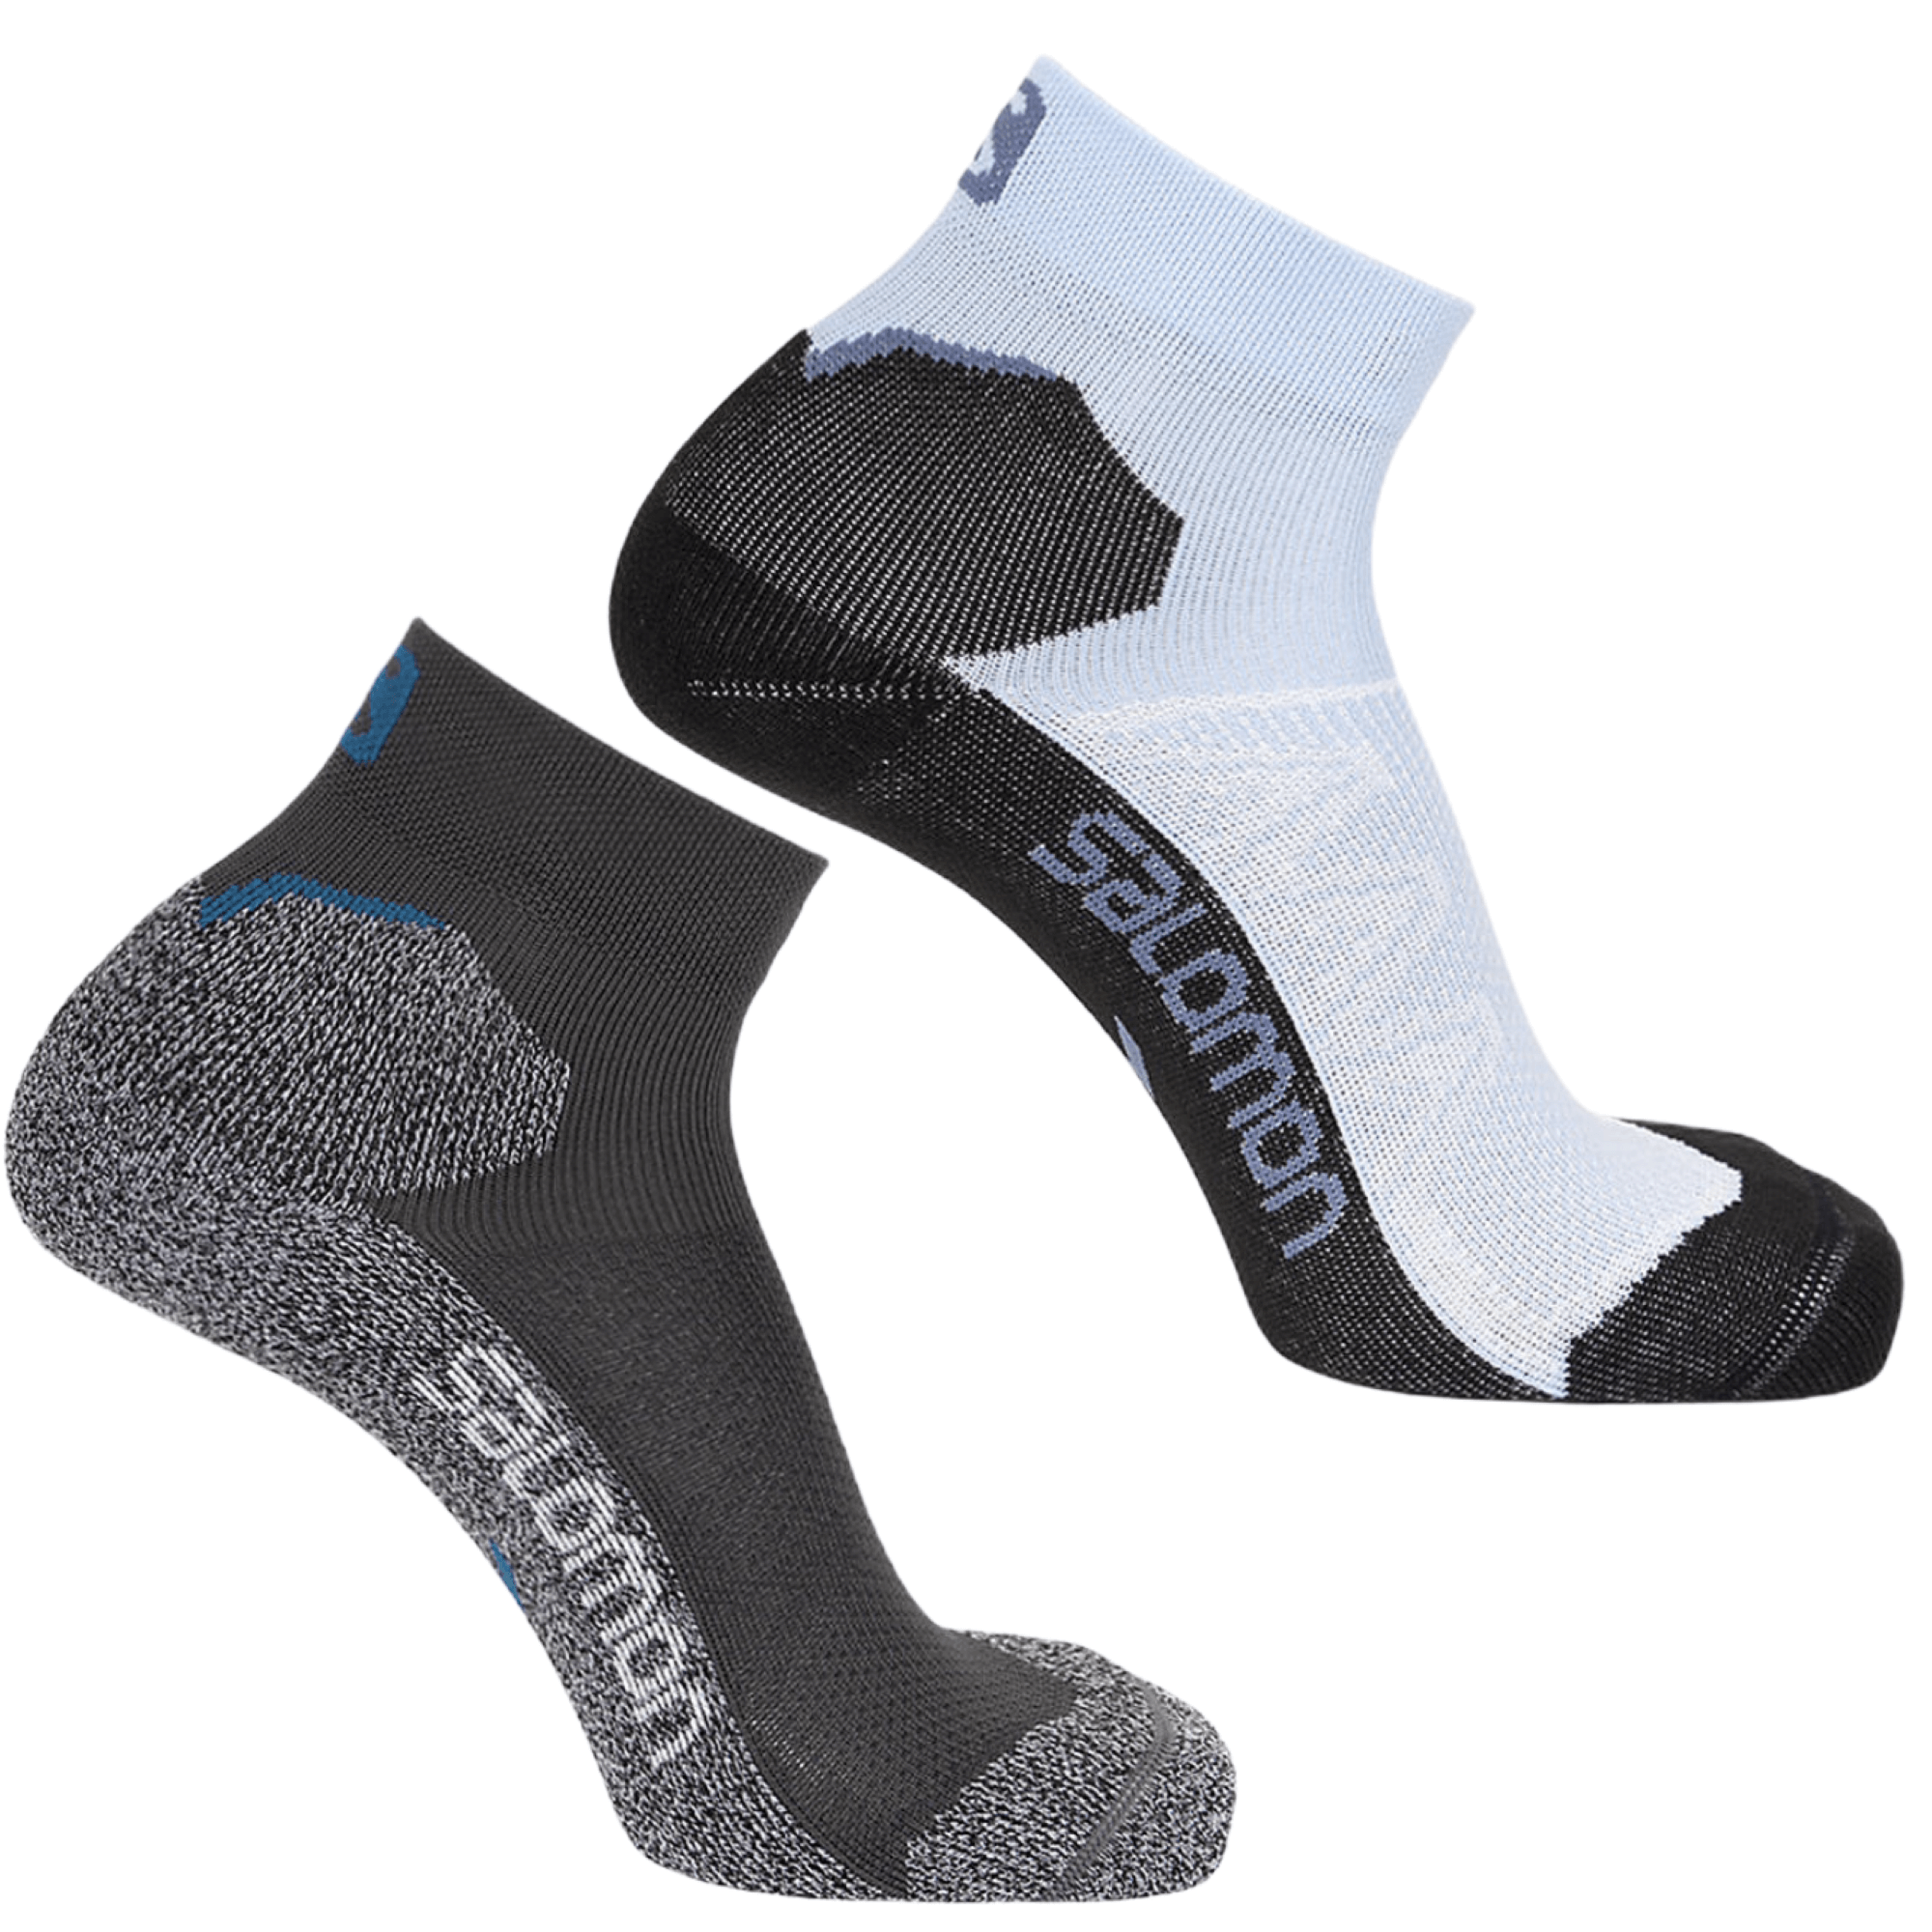 Funktionssocke  Salomon Speedcross  Sneaker im 2-Pack Weiß-Grau und Grau-Schwarz